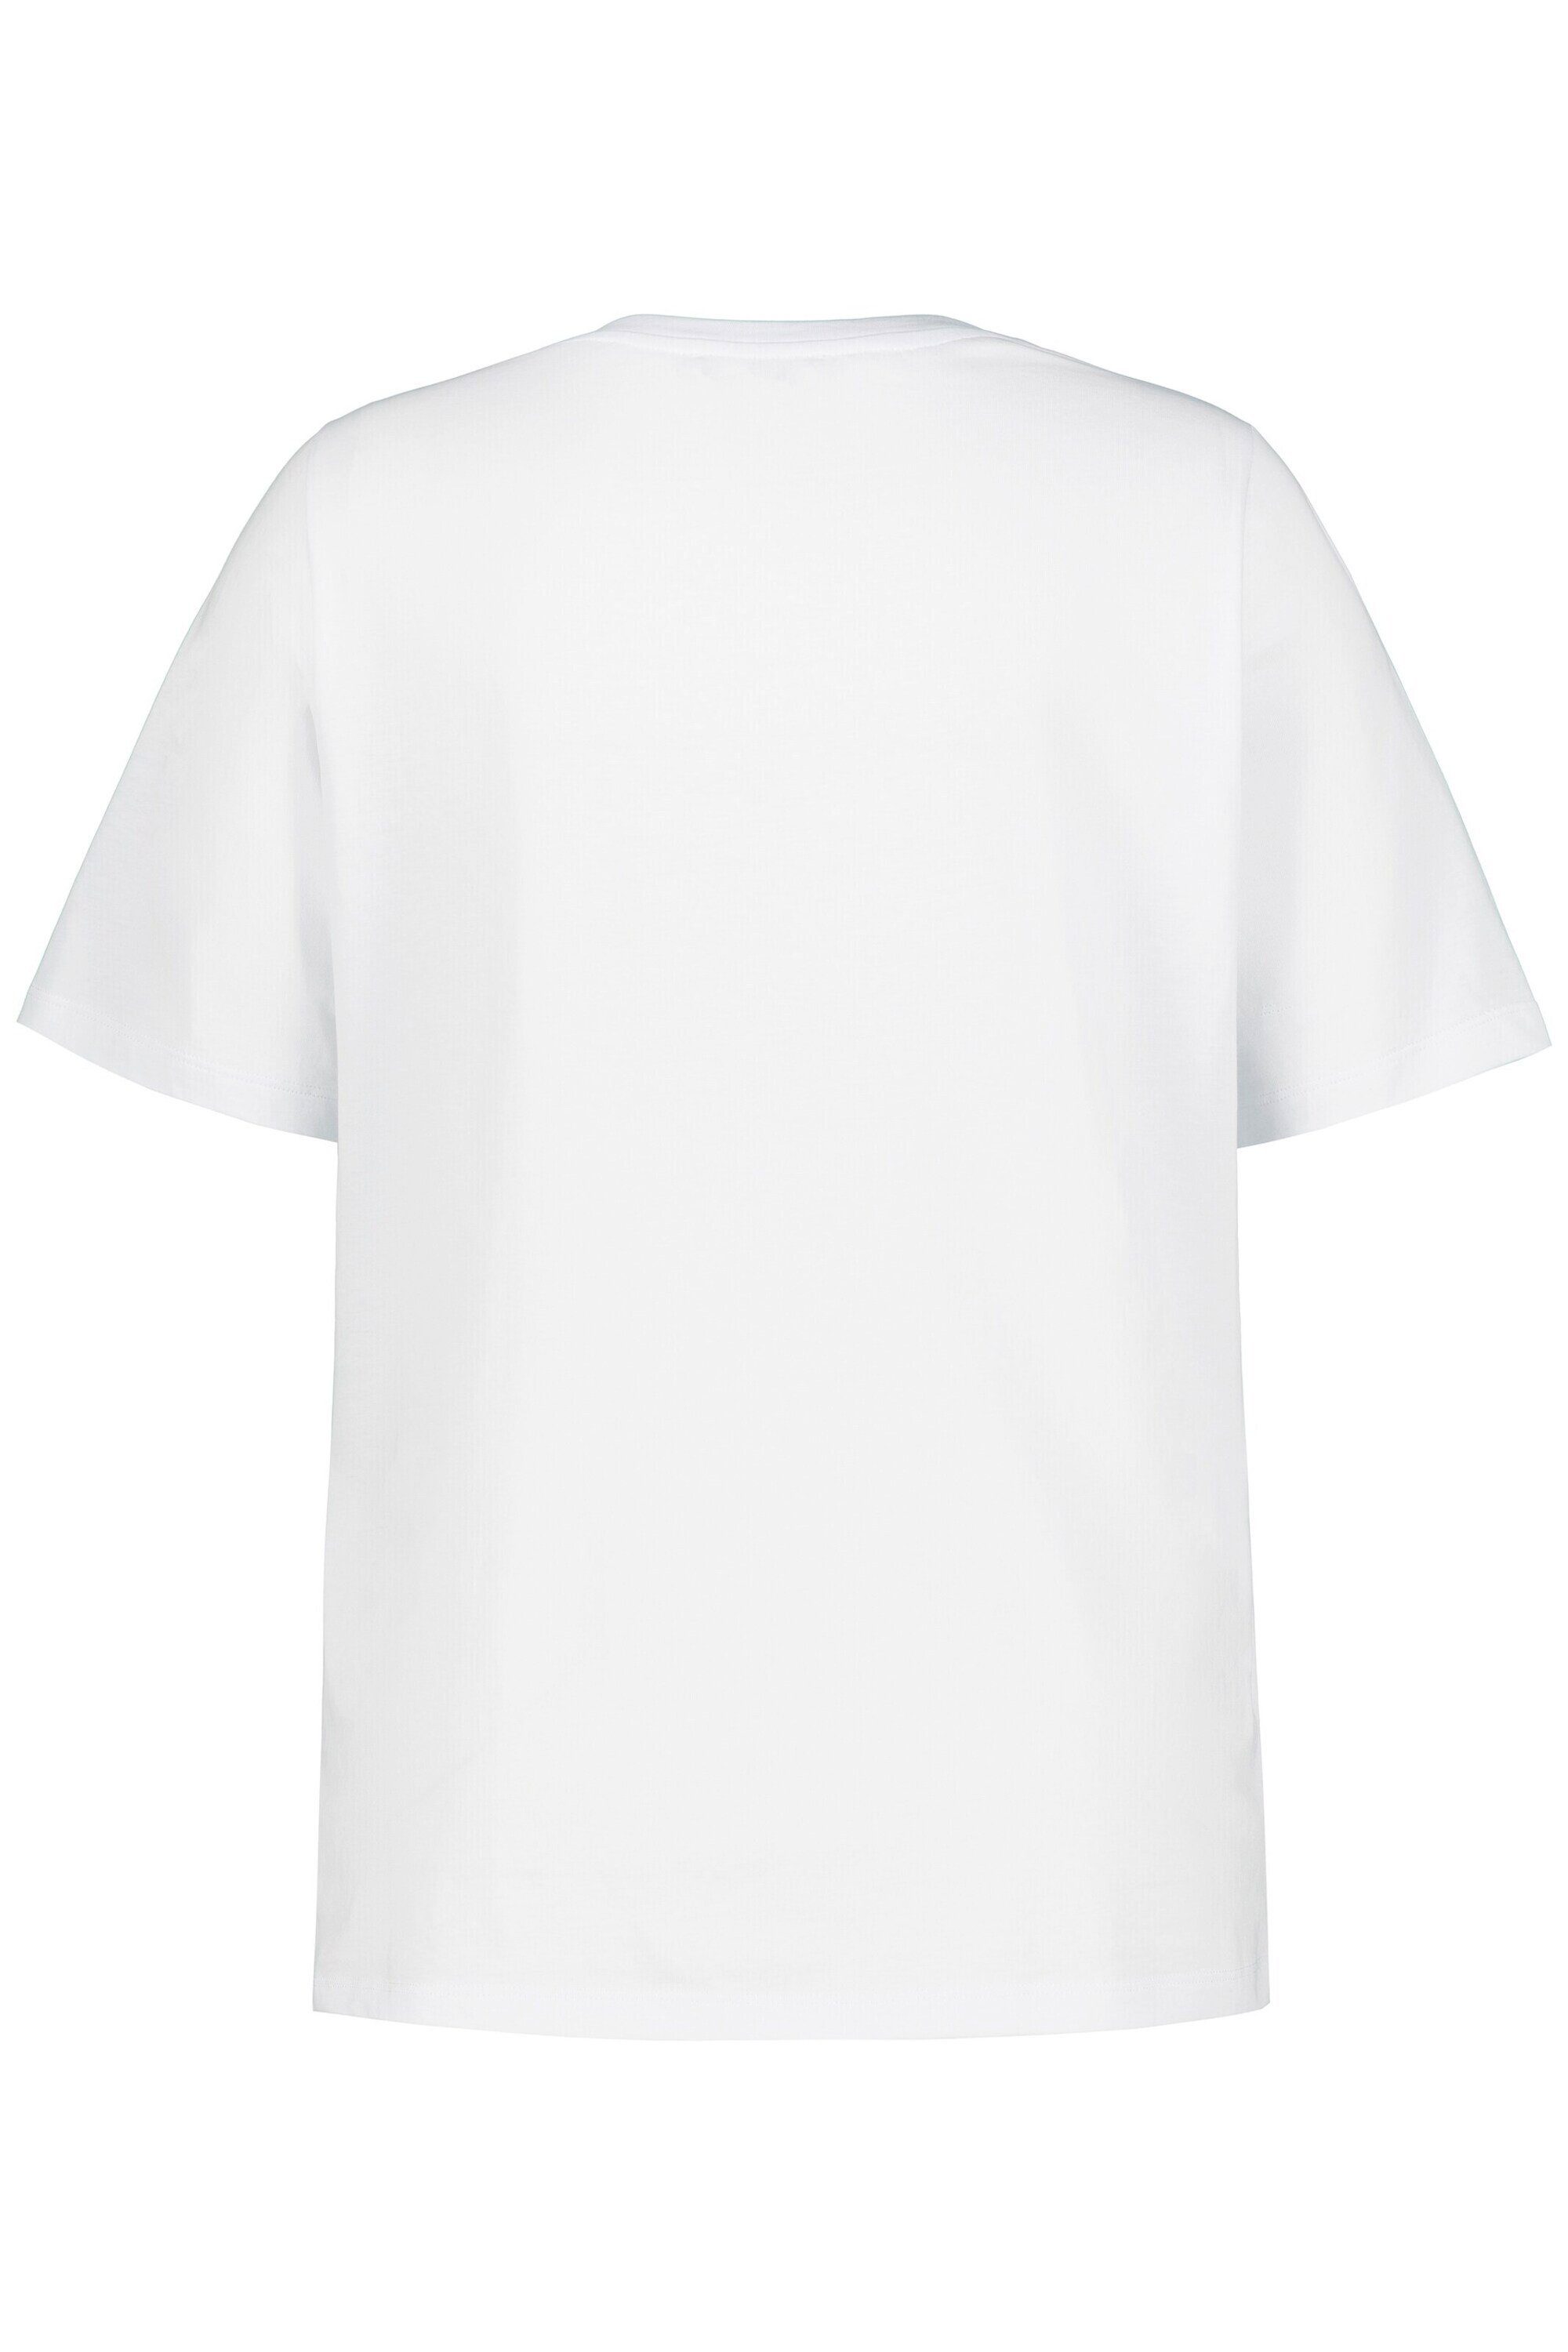 schneeweiß (1-tlg) Plain/ohne Ulla Details T-Shirt Popken